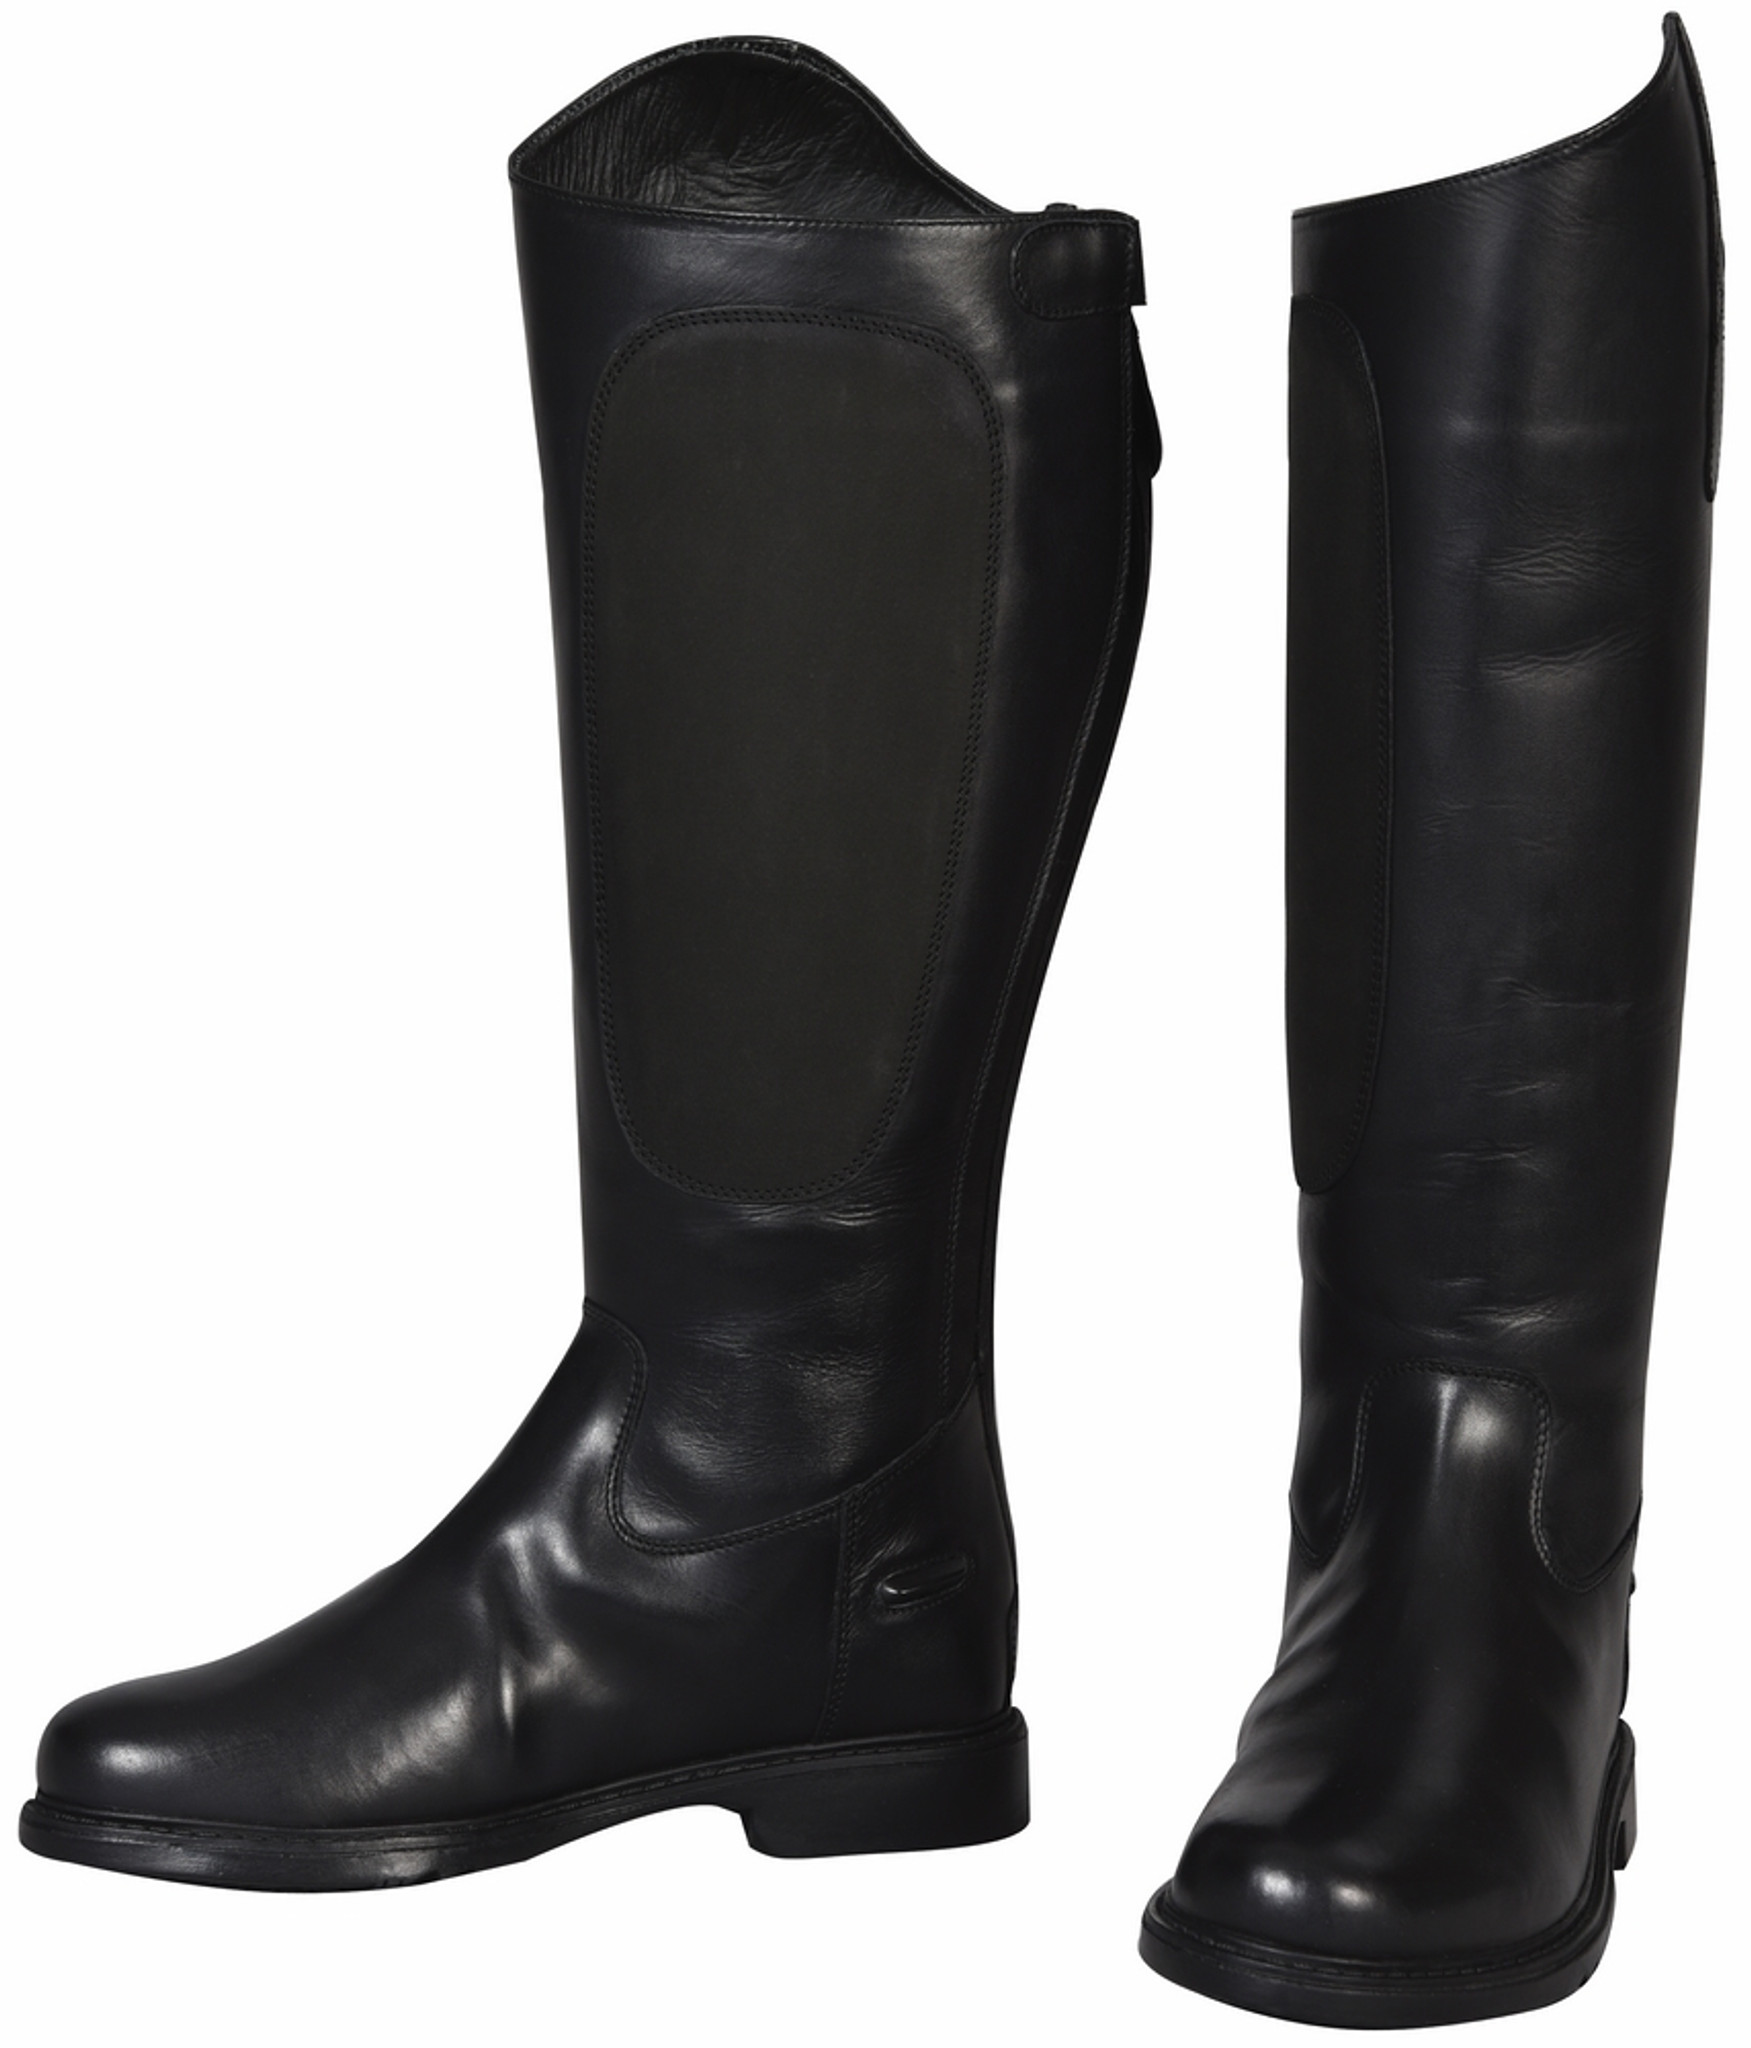 wide calf dress boots